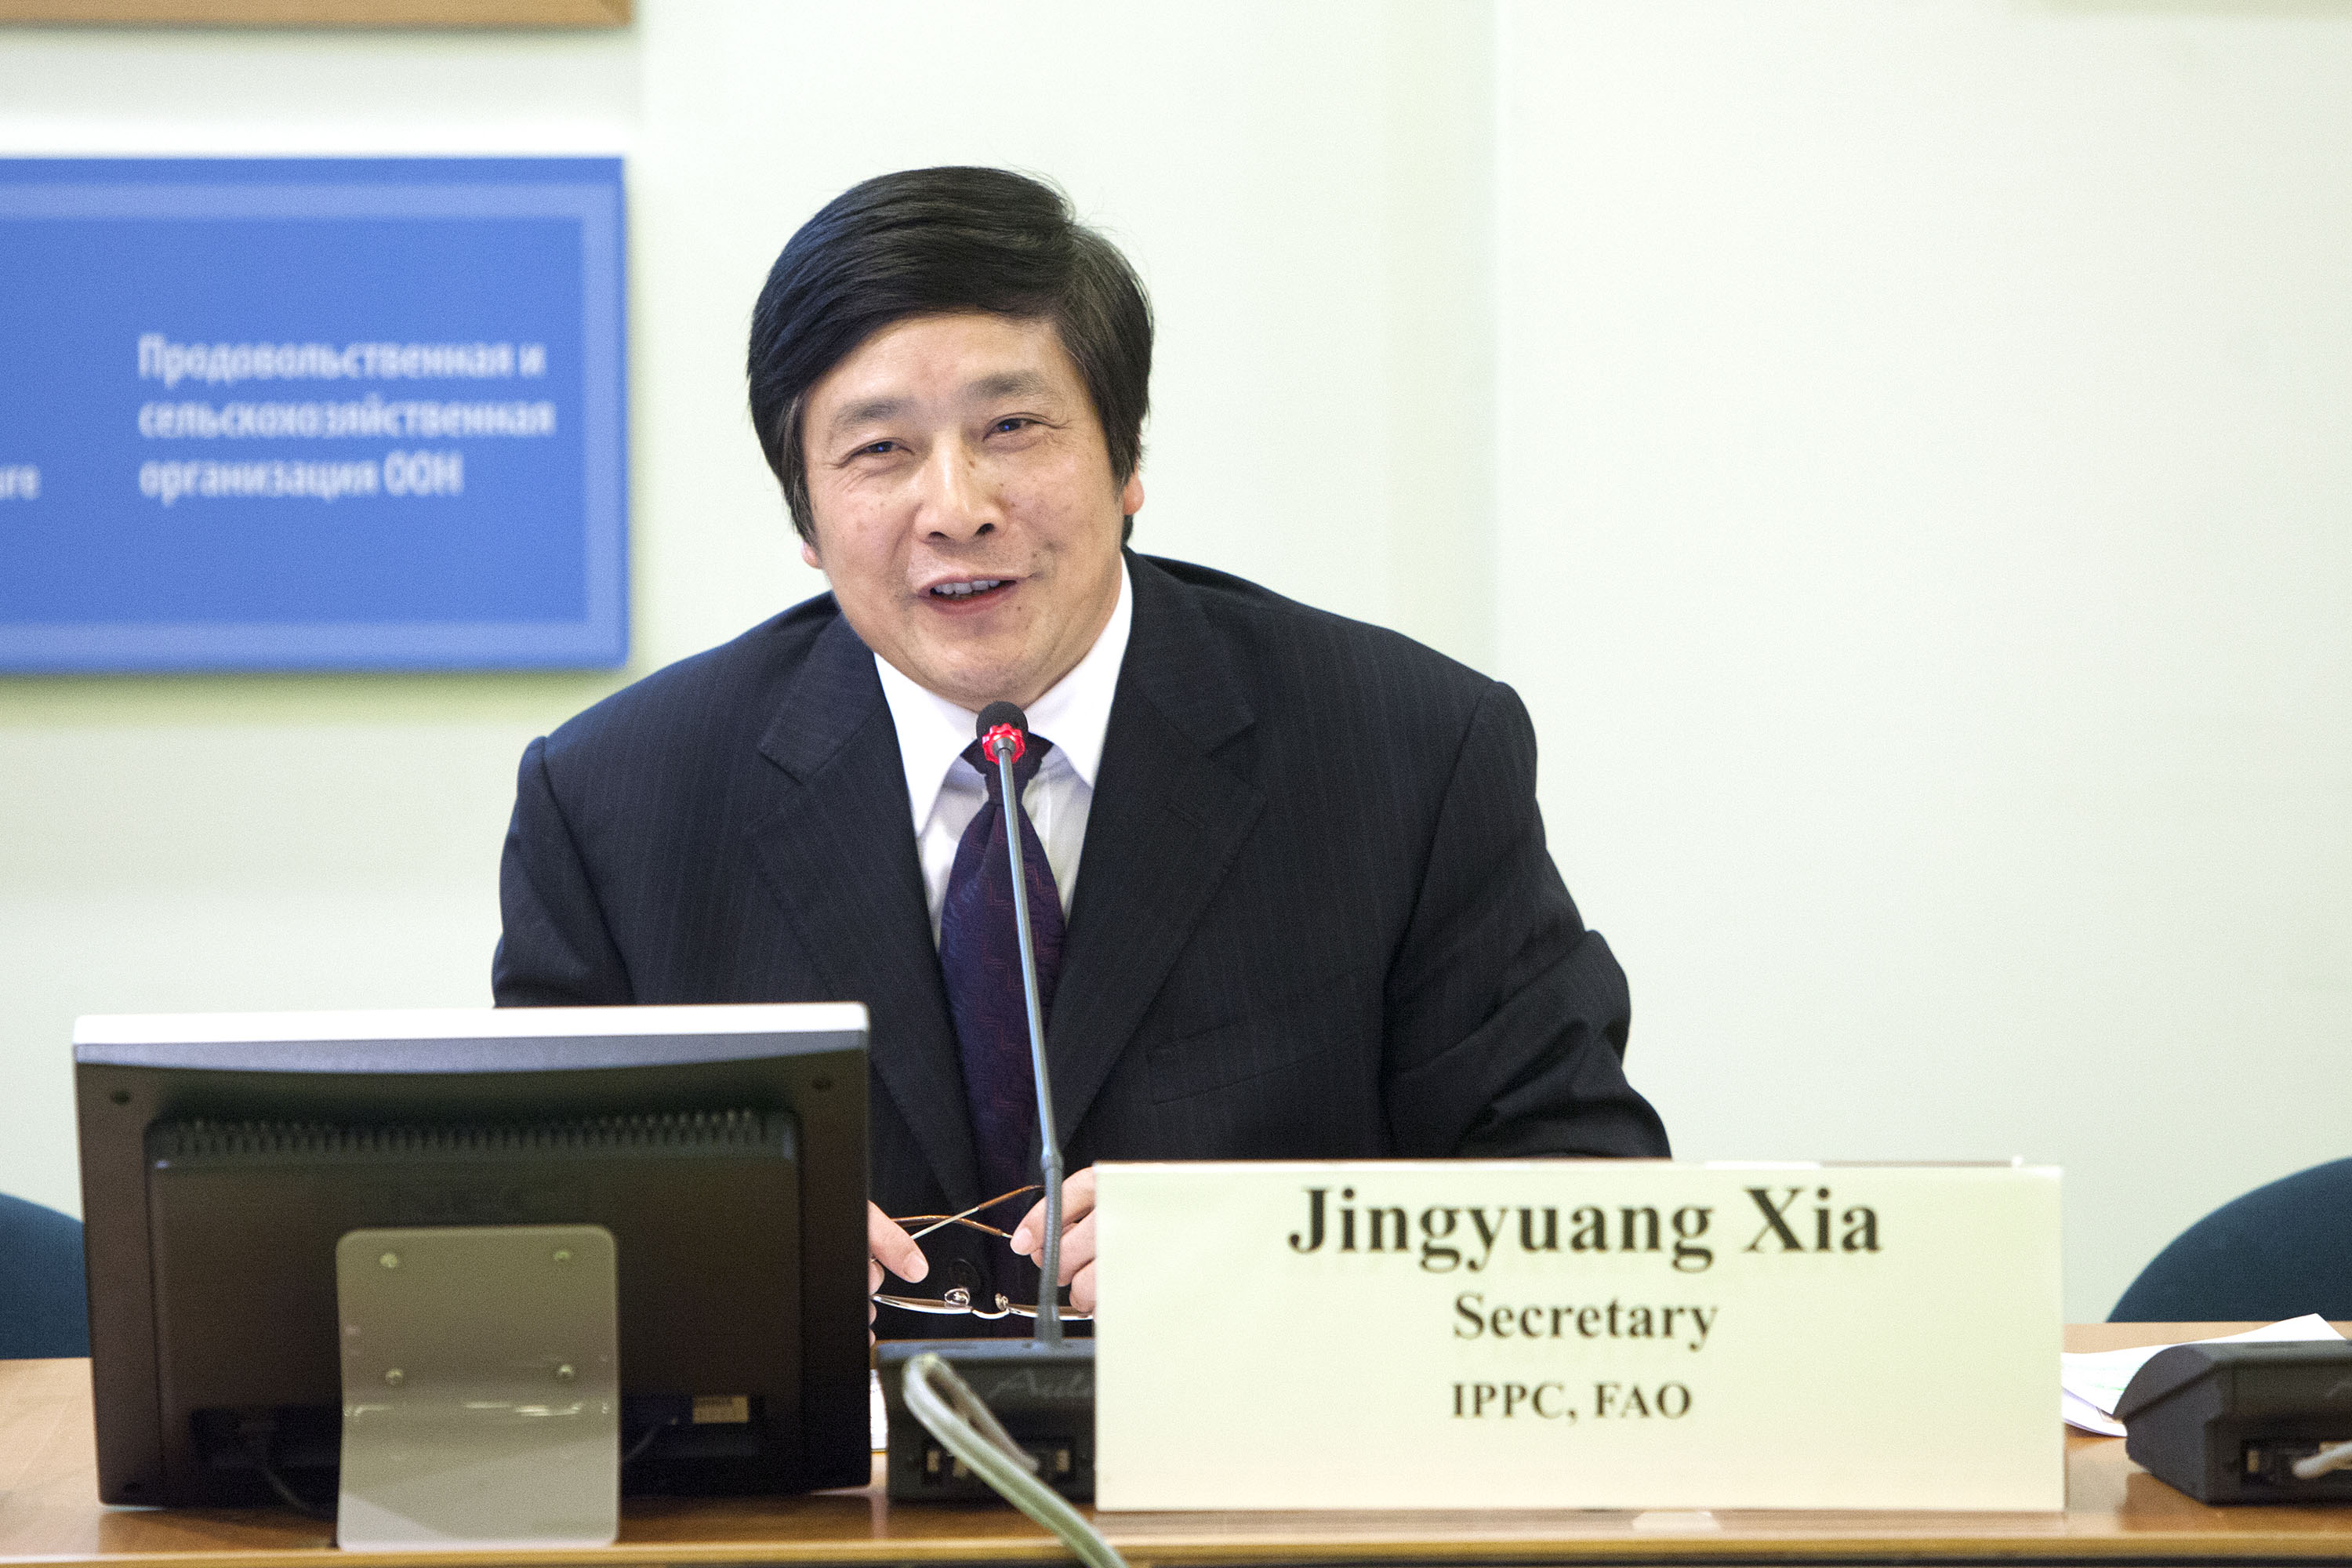 Mr. Jingyuan Xia